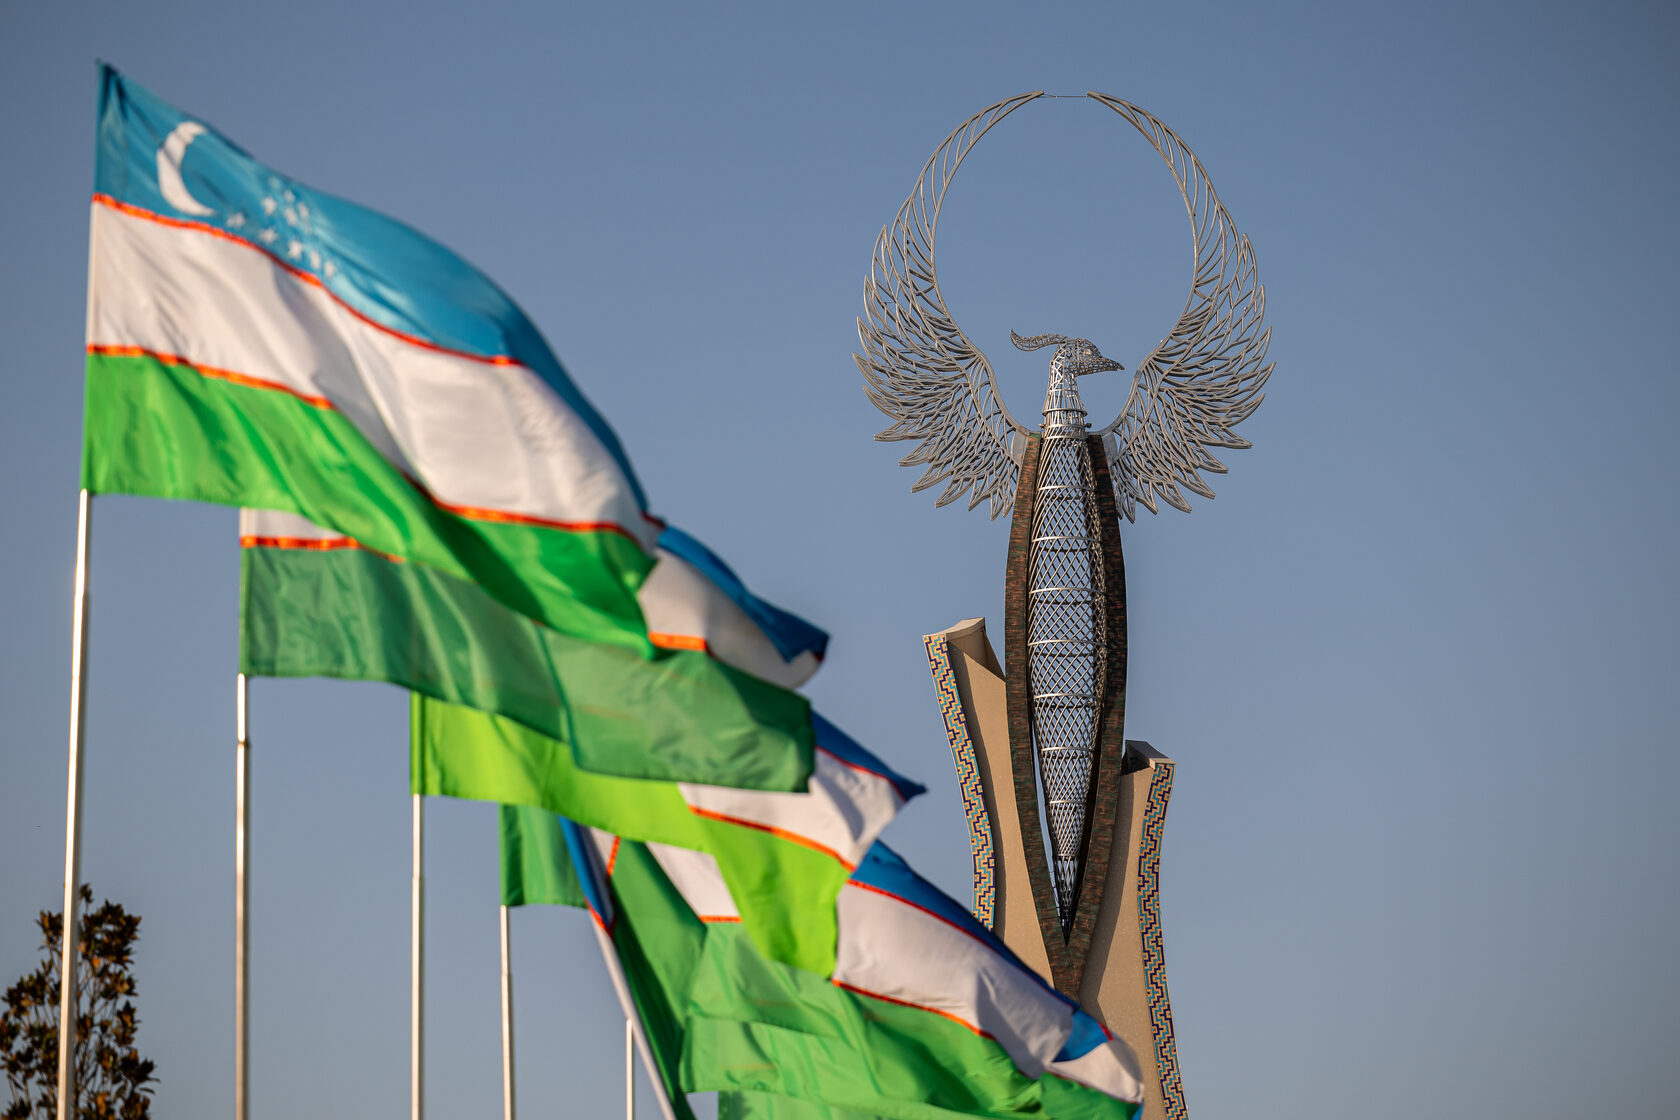 Органы внутренних дел Узбекистана в качестве демократичной и истинно народной структуры